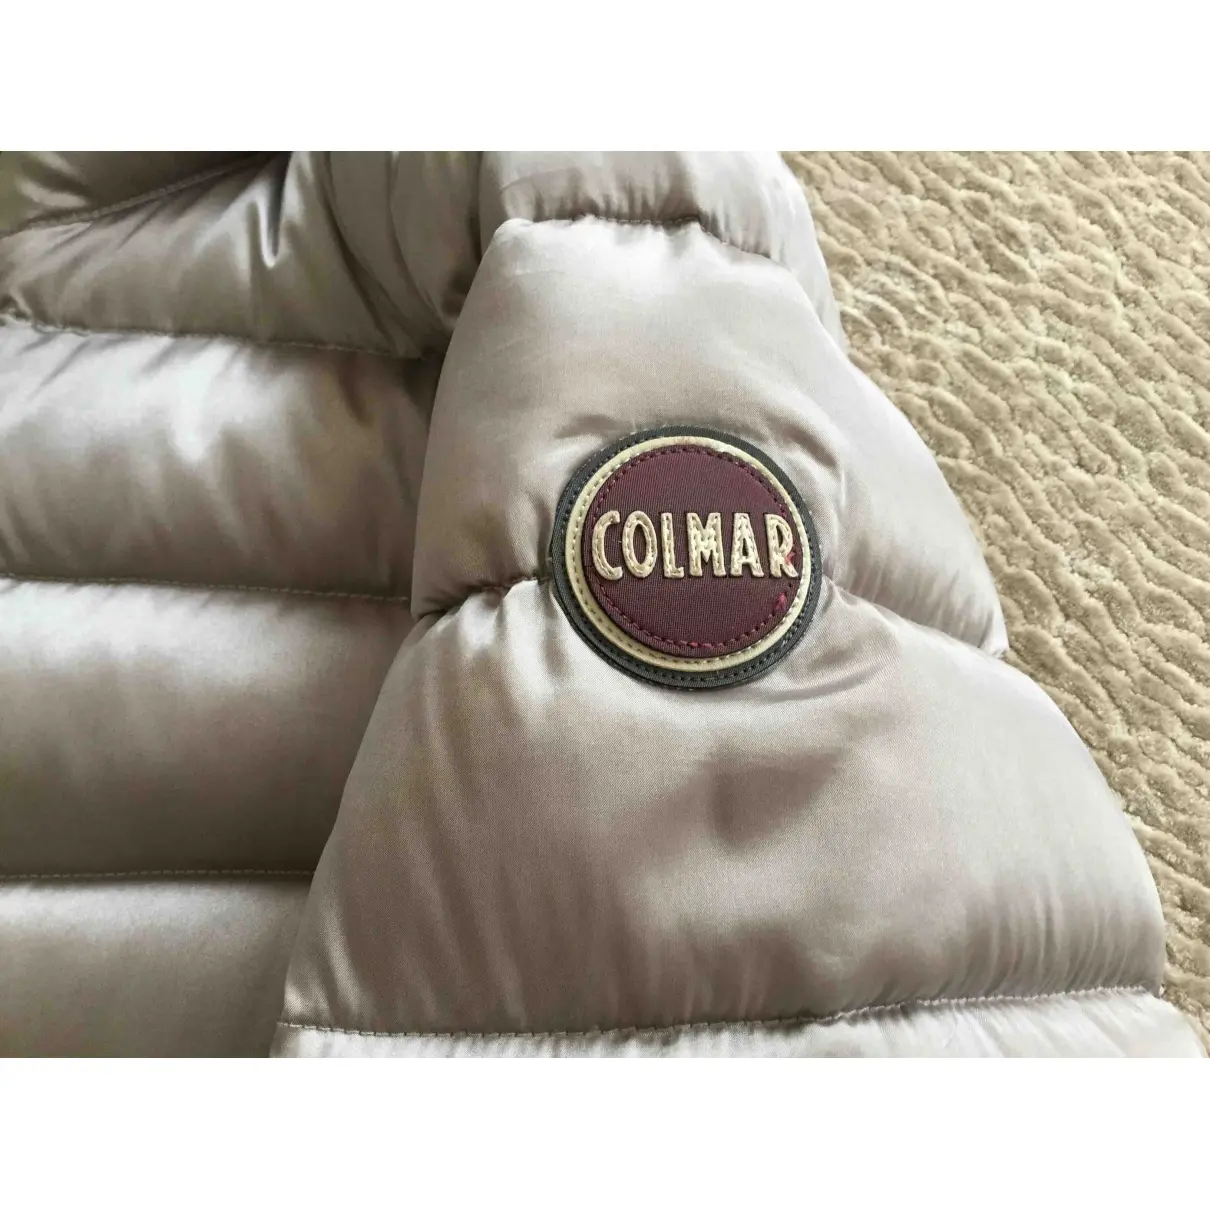 Colmar Biker jacket for sale